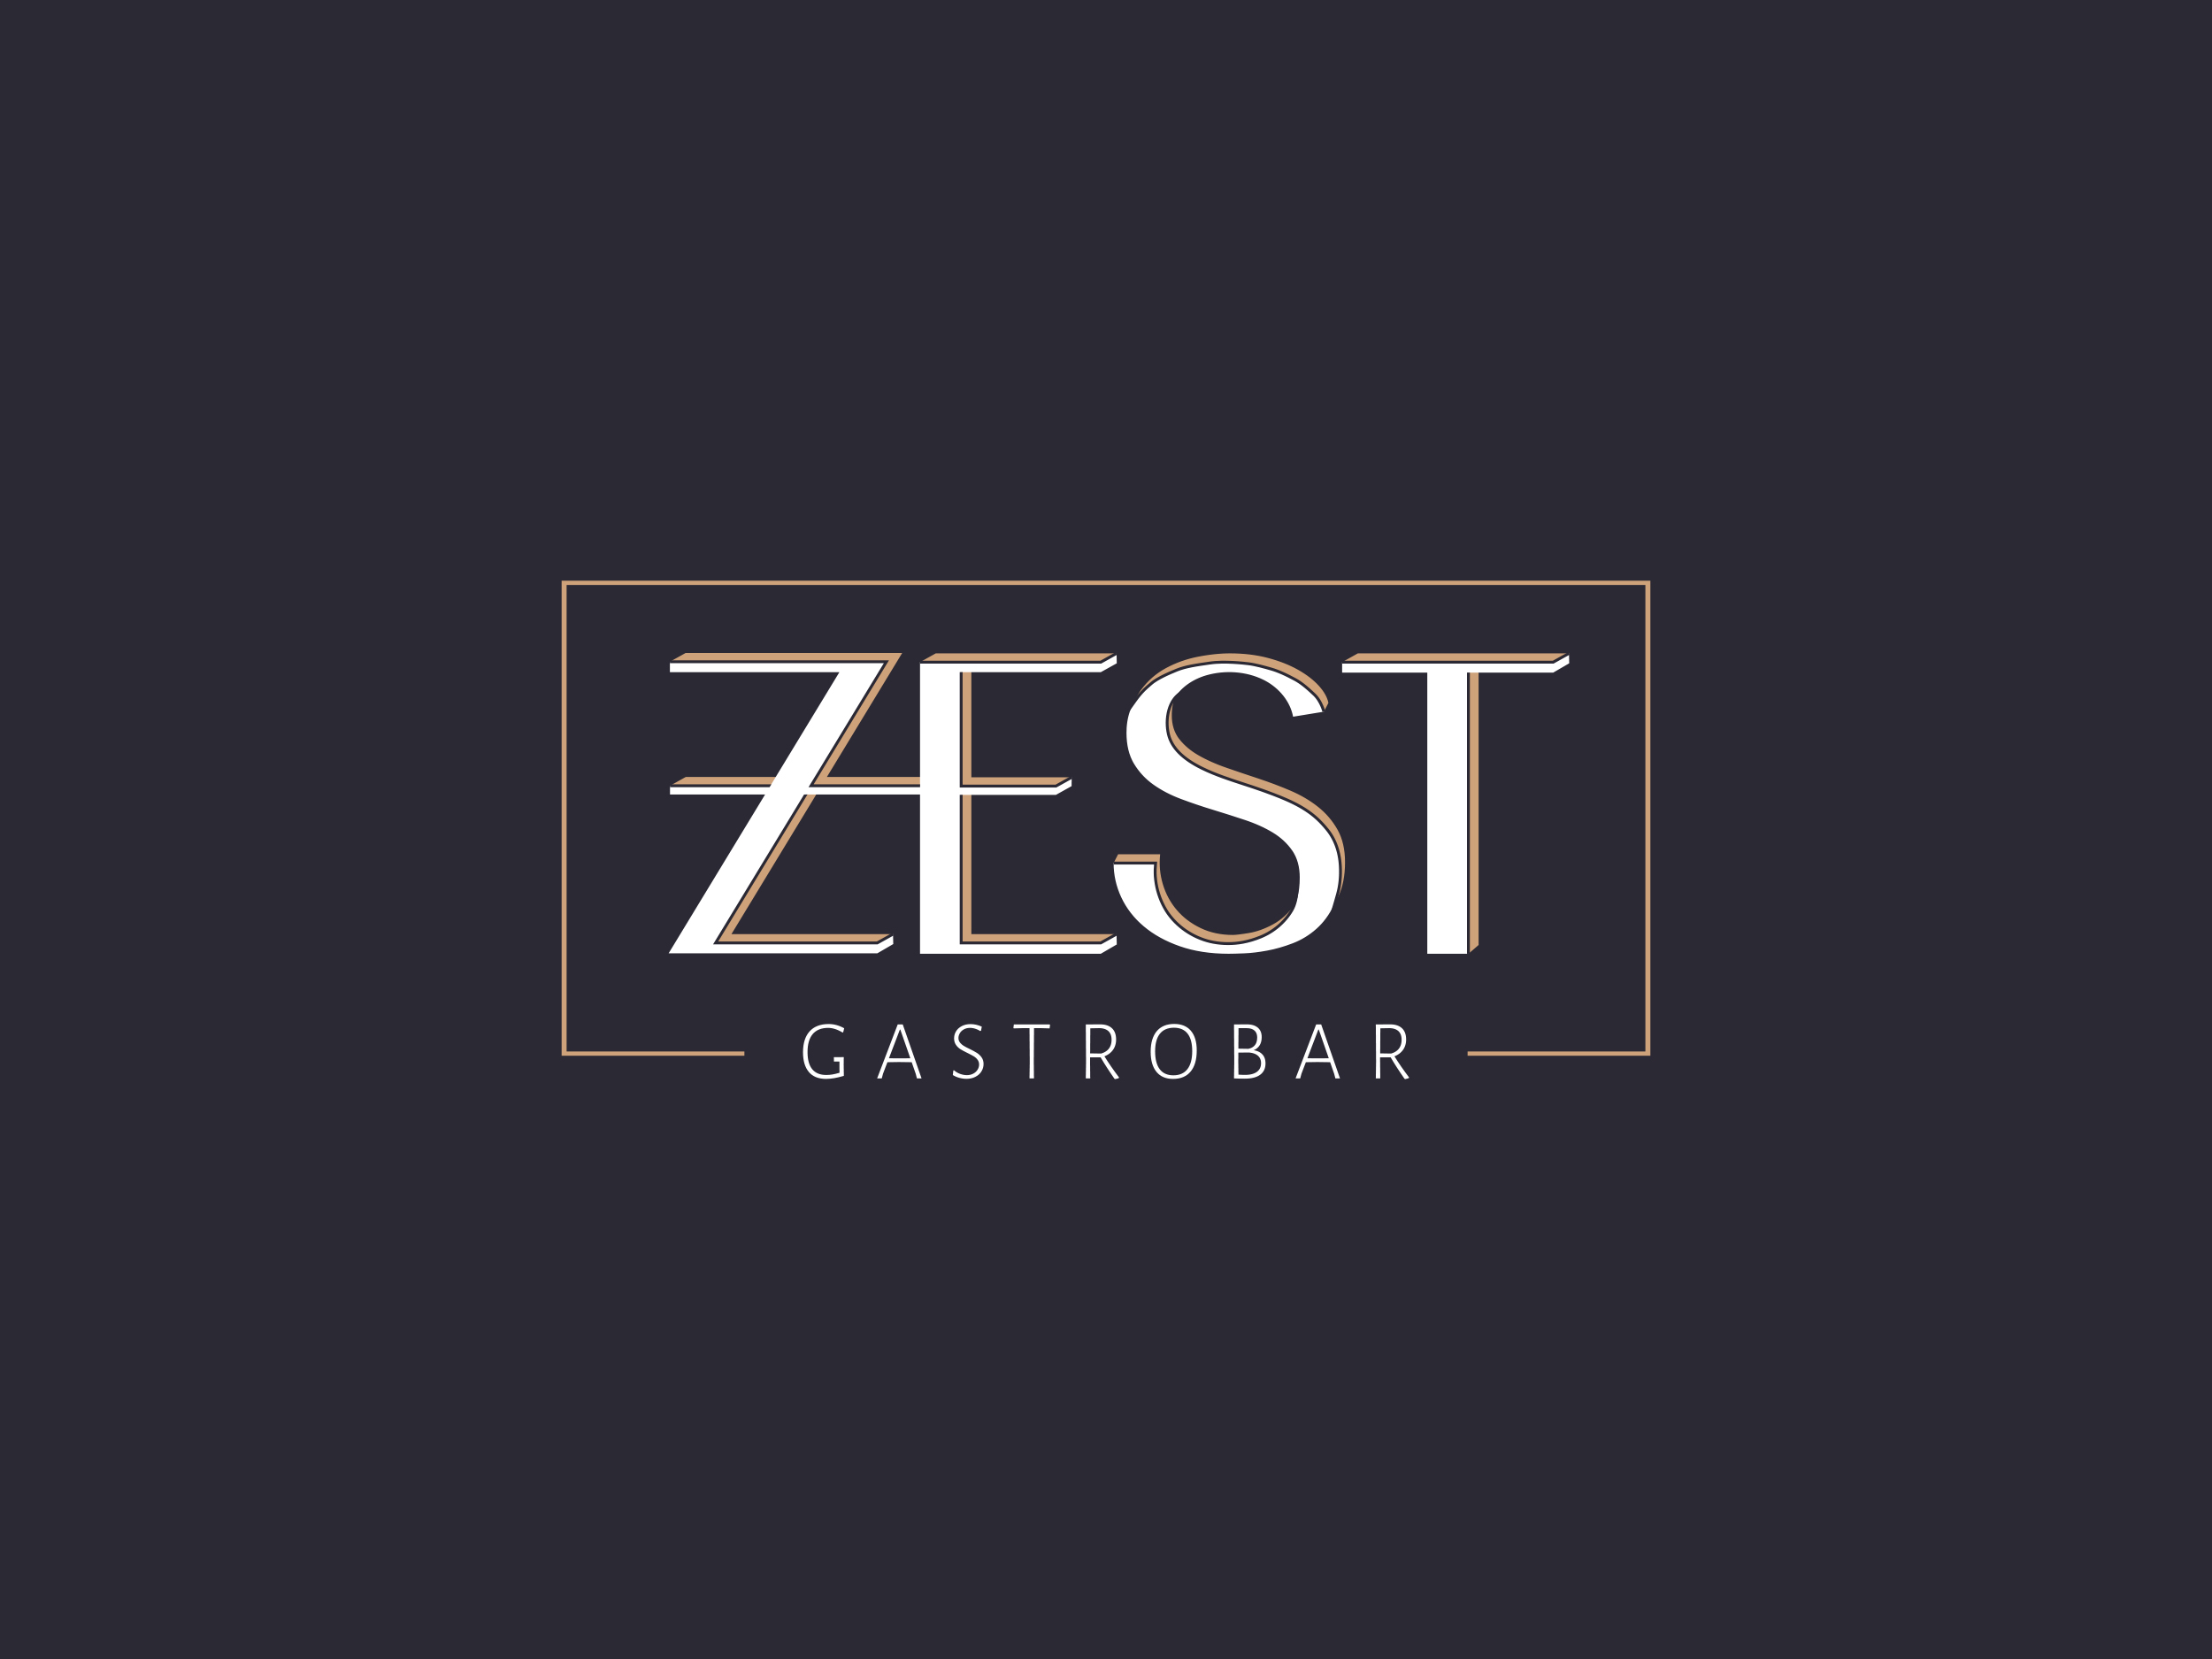 Zest Gastrobar